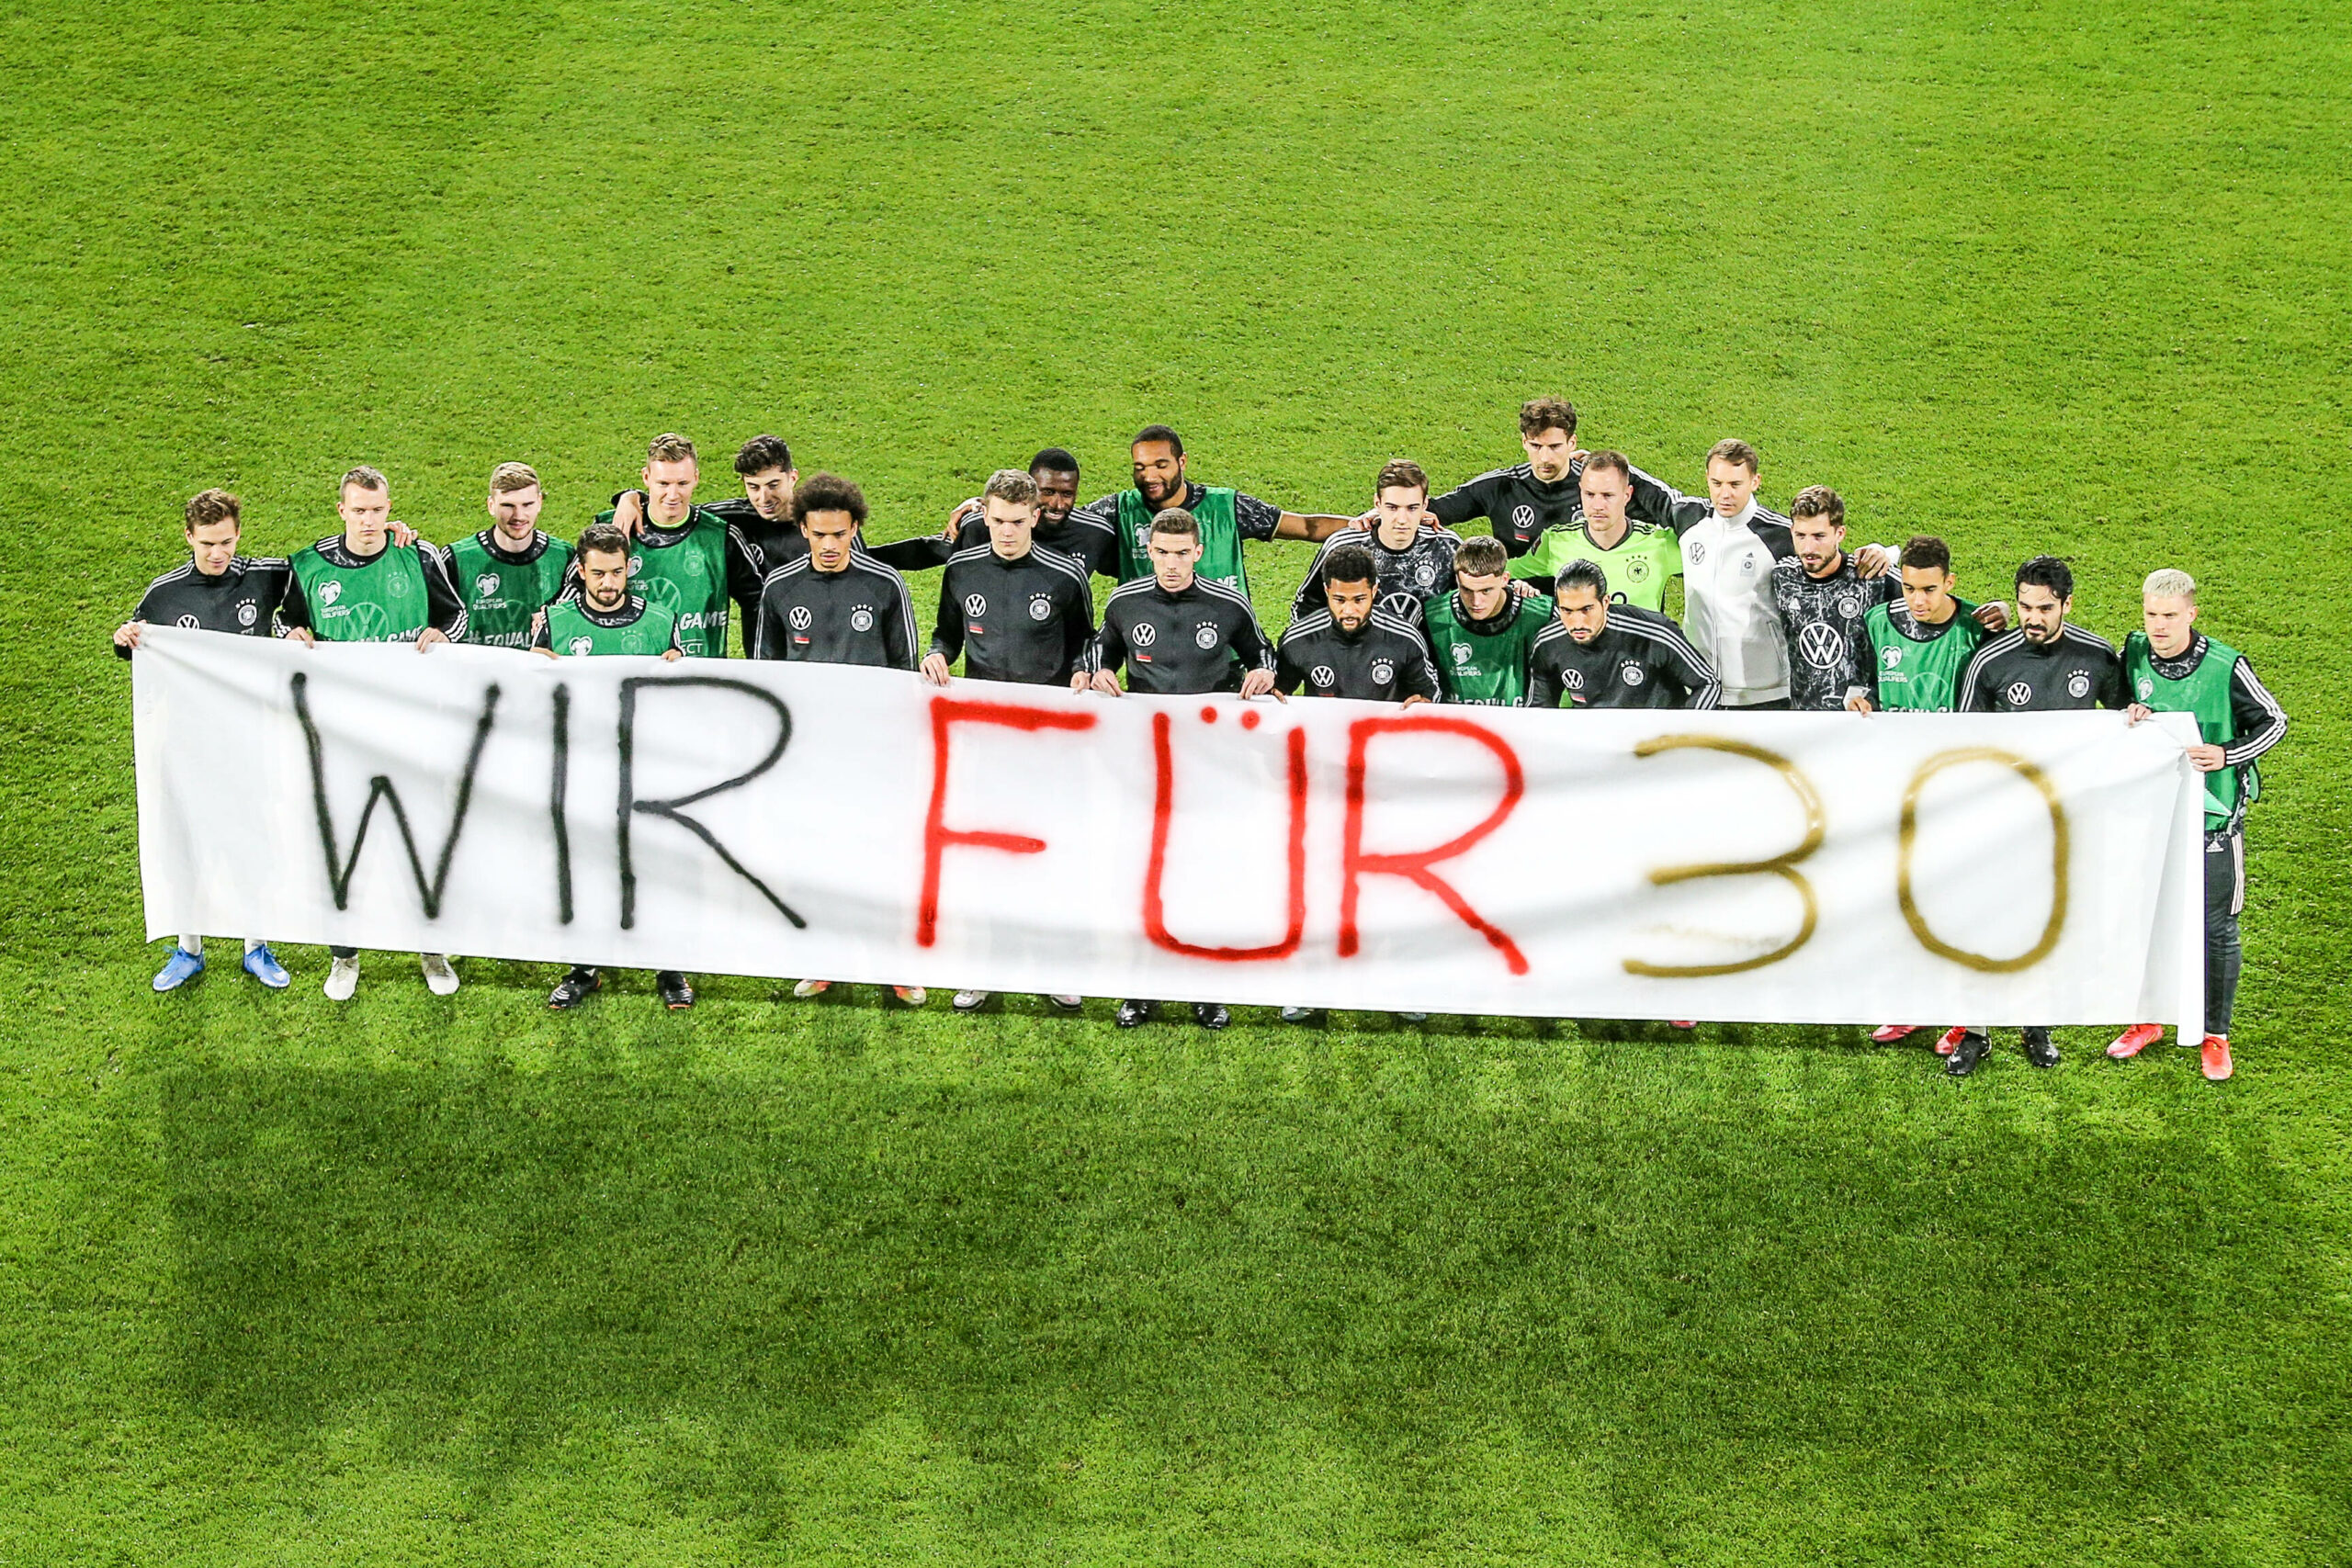 DFB | Nationalmannschaft mit erneuter Botschaft für Menschenrechte